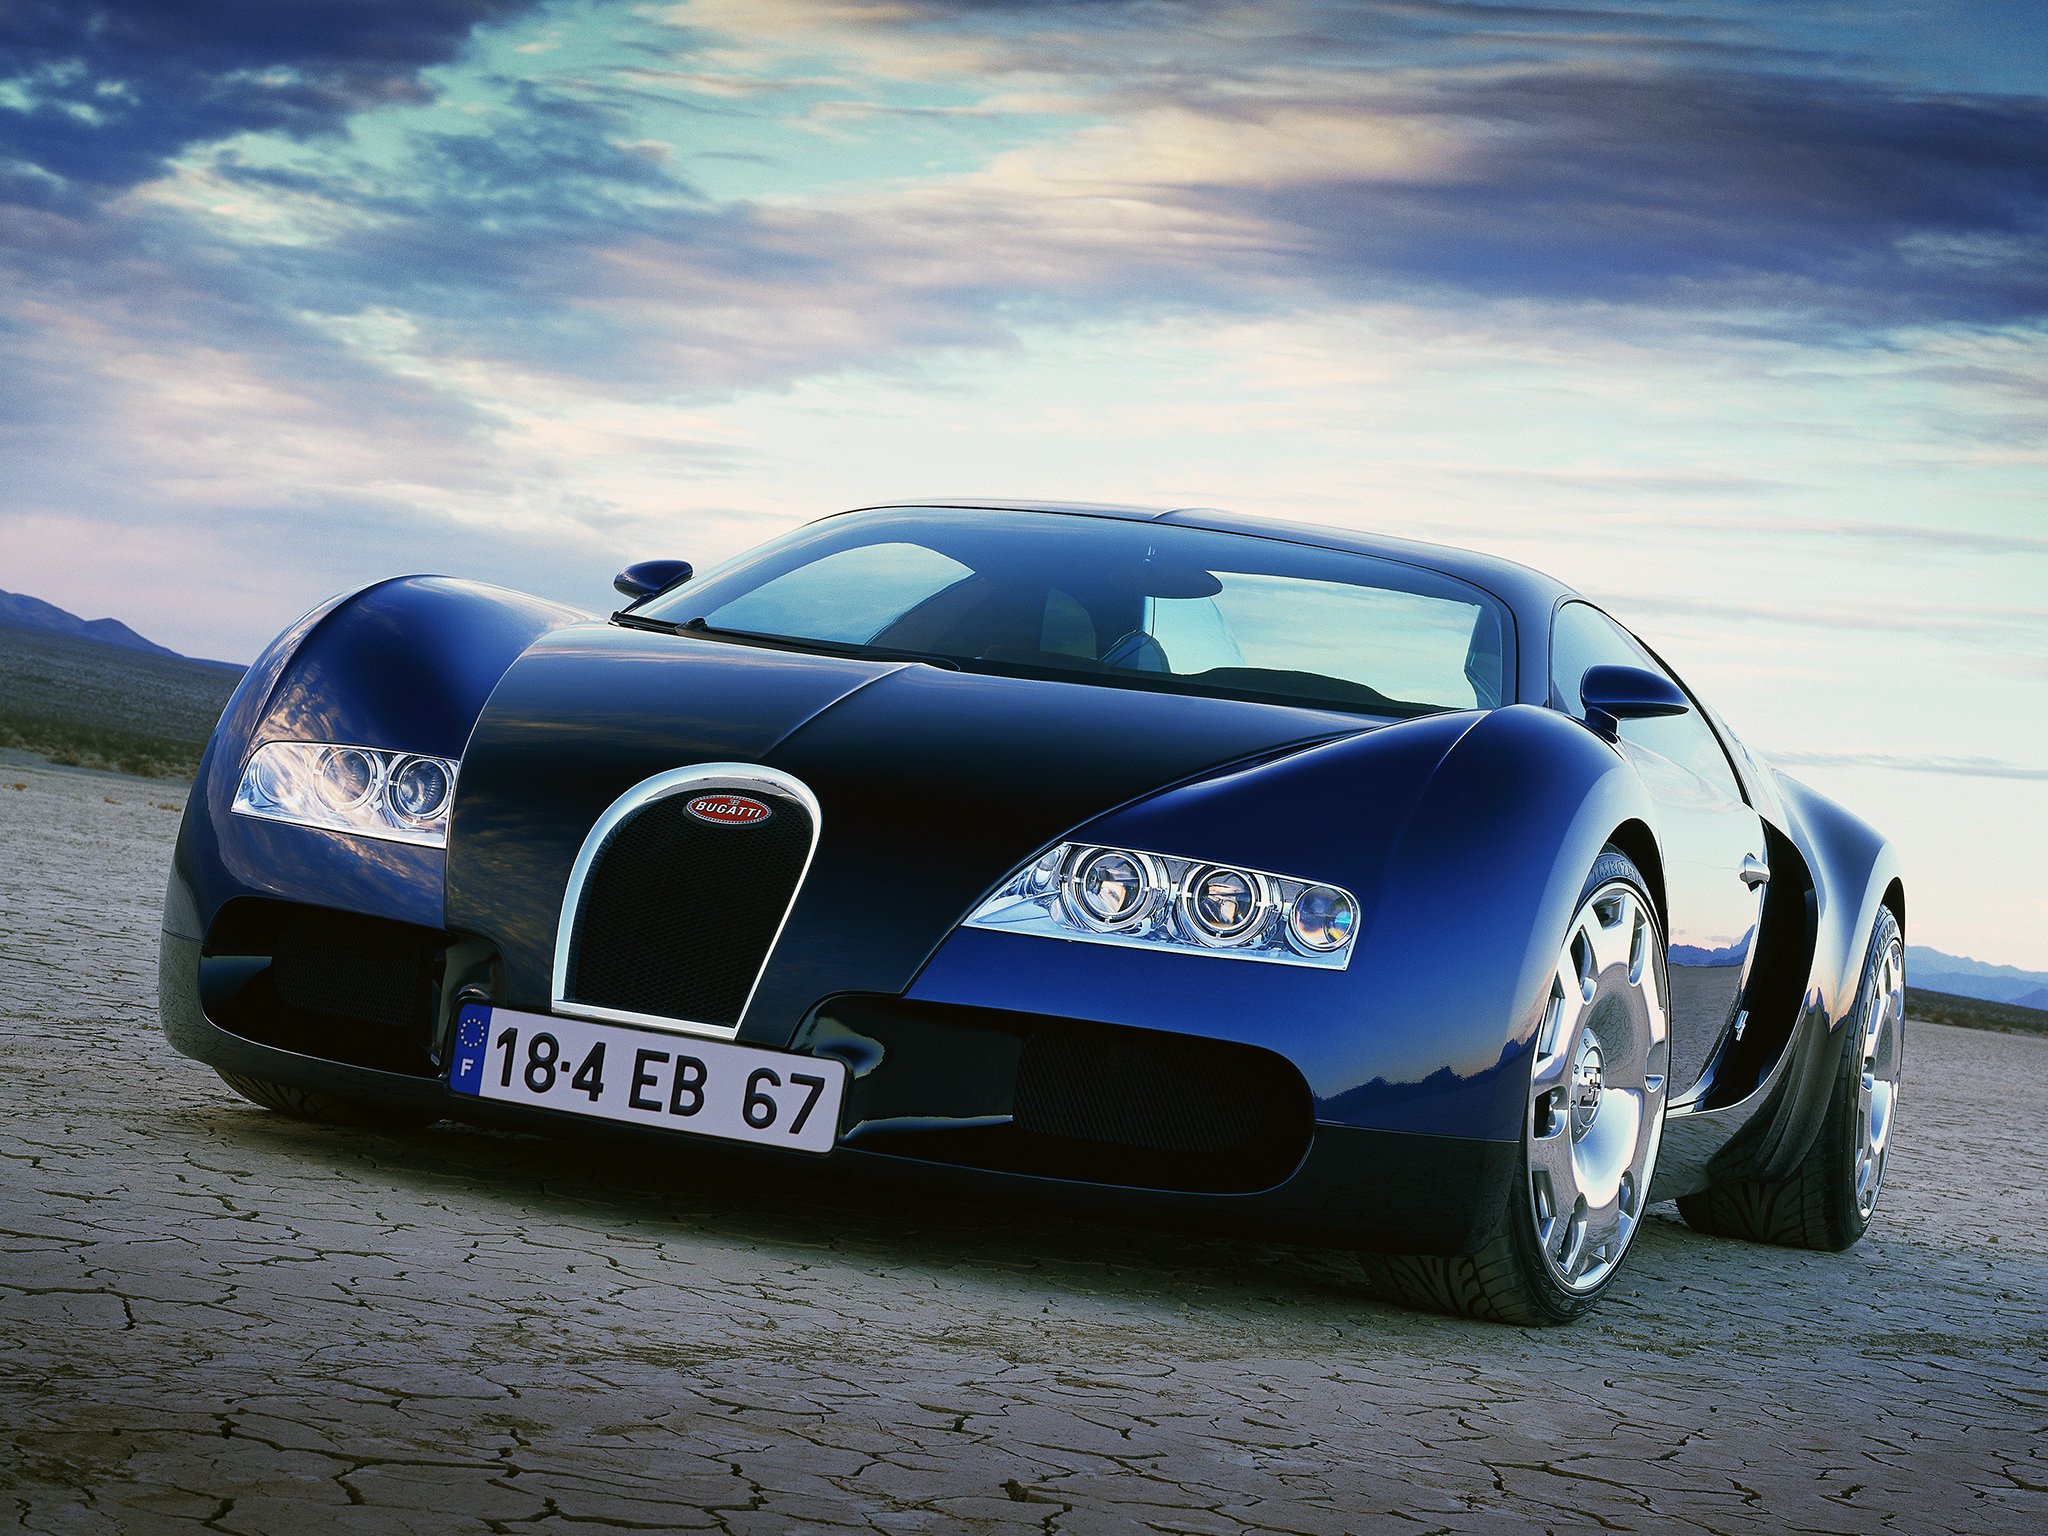 1999, Bugatti, E b, 18 4, Veyron, Concept, Supercar Wallpaper